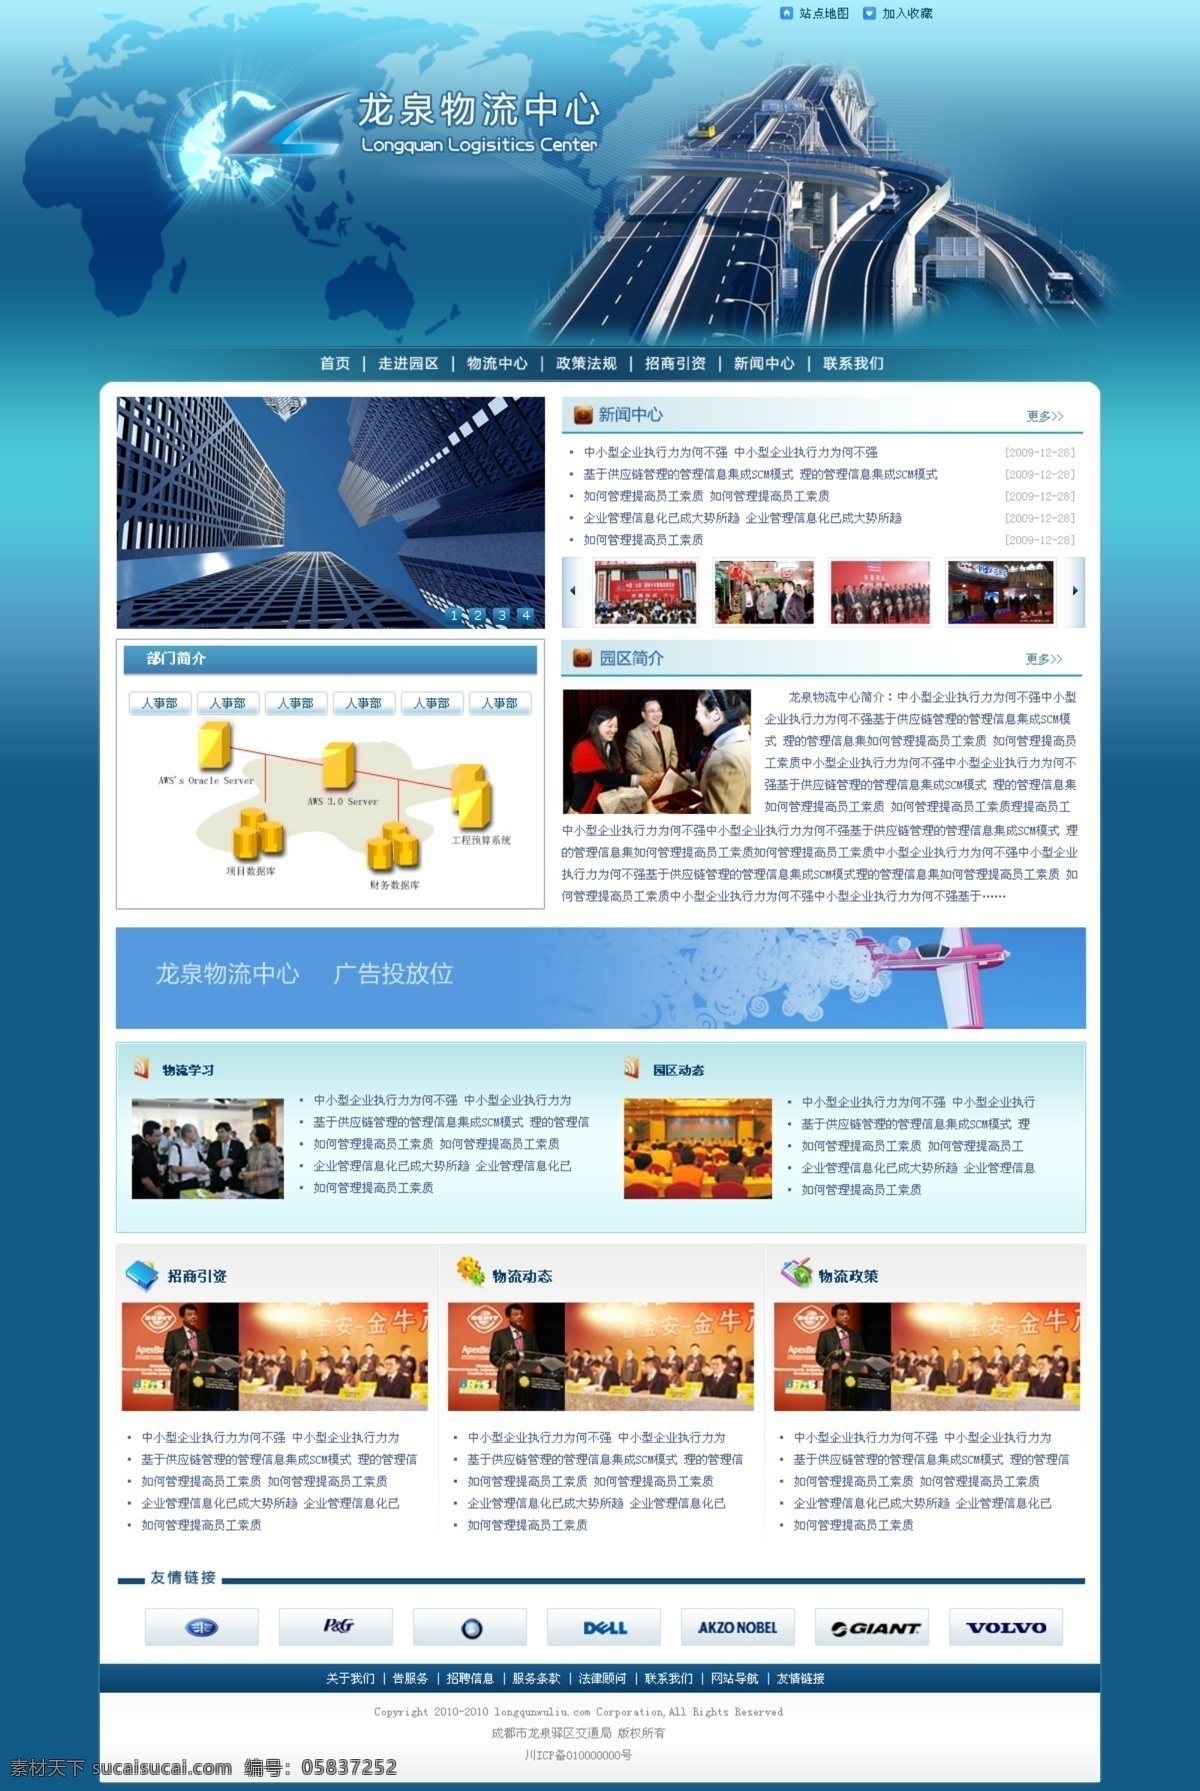 蓝色 网页 网页模板 网站 物流 现代化 行业网站 源文件 网页设计 天蓝色 风格 首页 政府部门 事业单位 物流园区 物流中心 个人设计 中文模版 psd源文件